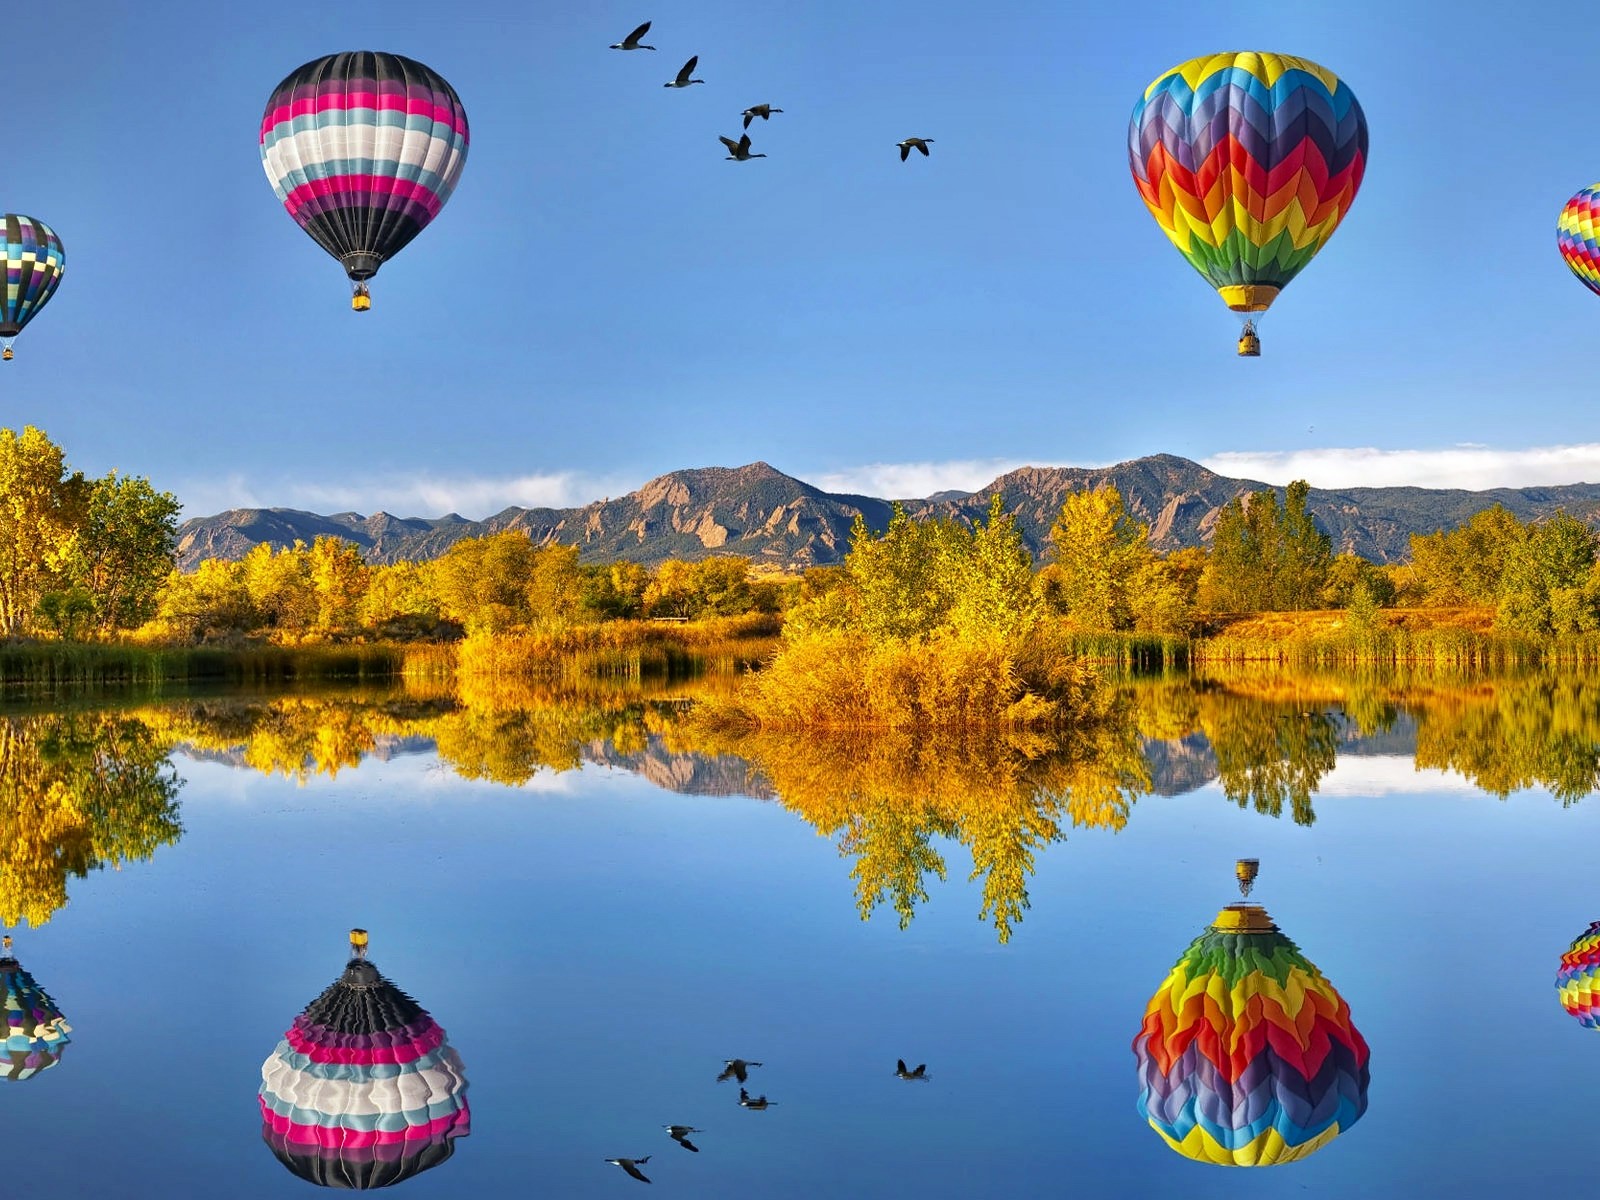 fond d'écran ballon à air chaud,faire du ballon ascensionnel,montgolfière,la nature,ciel,véhicule